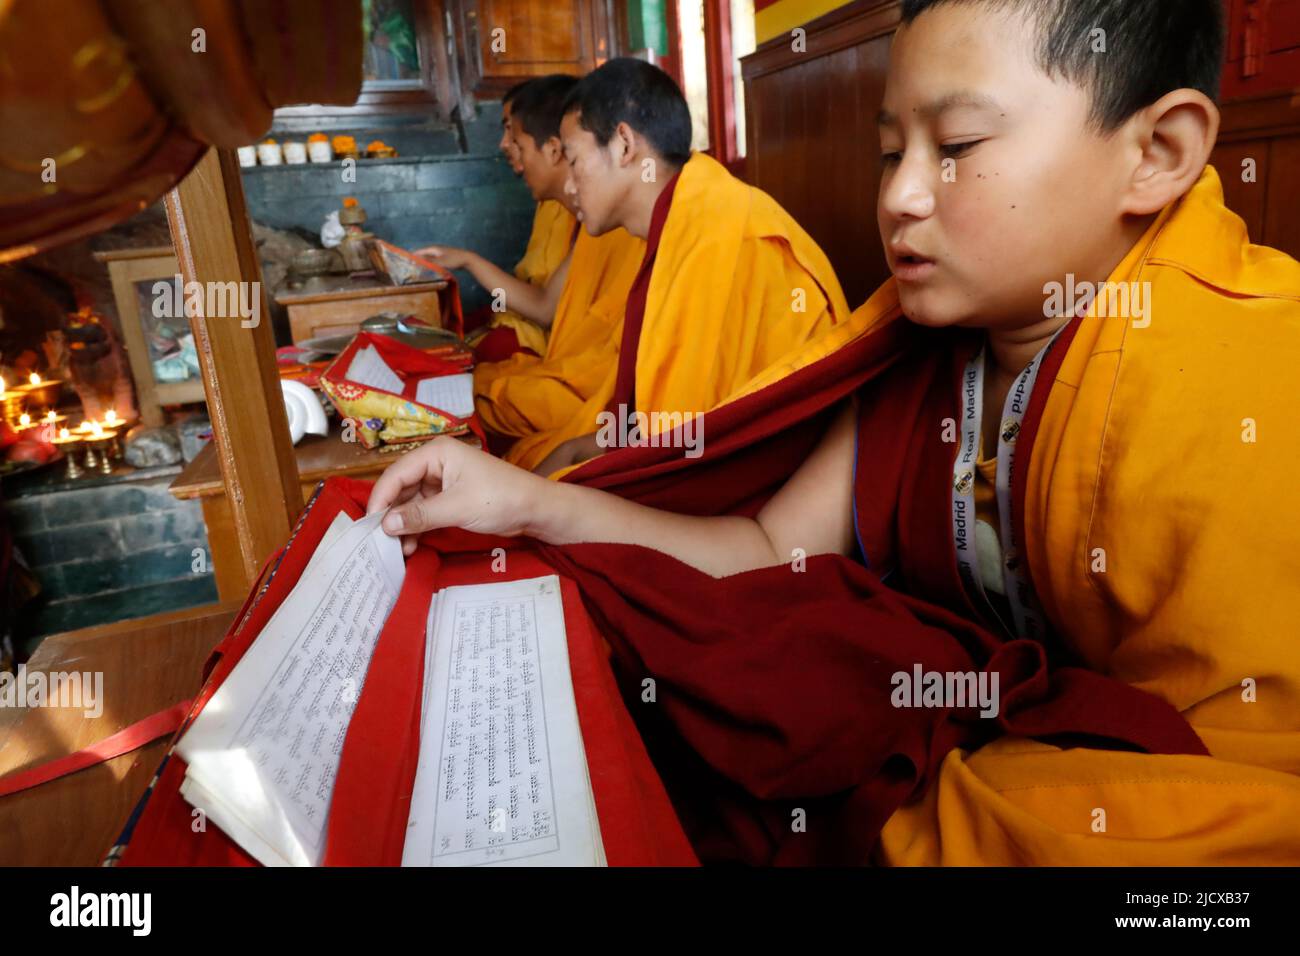 Mönche bei der Zeremonie mit tibetisch-buddhistischem Gebetsbuch in Sanskrit, Ganesh-Samswati Buddhistischer Tempel, Kathmandu, Nepal, Asien Stockfoto